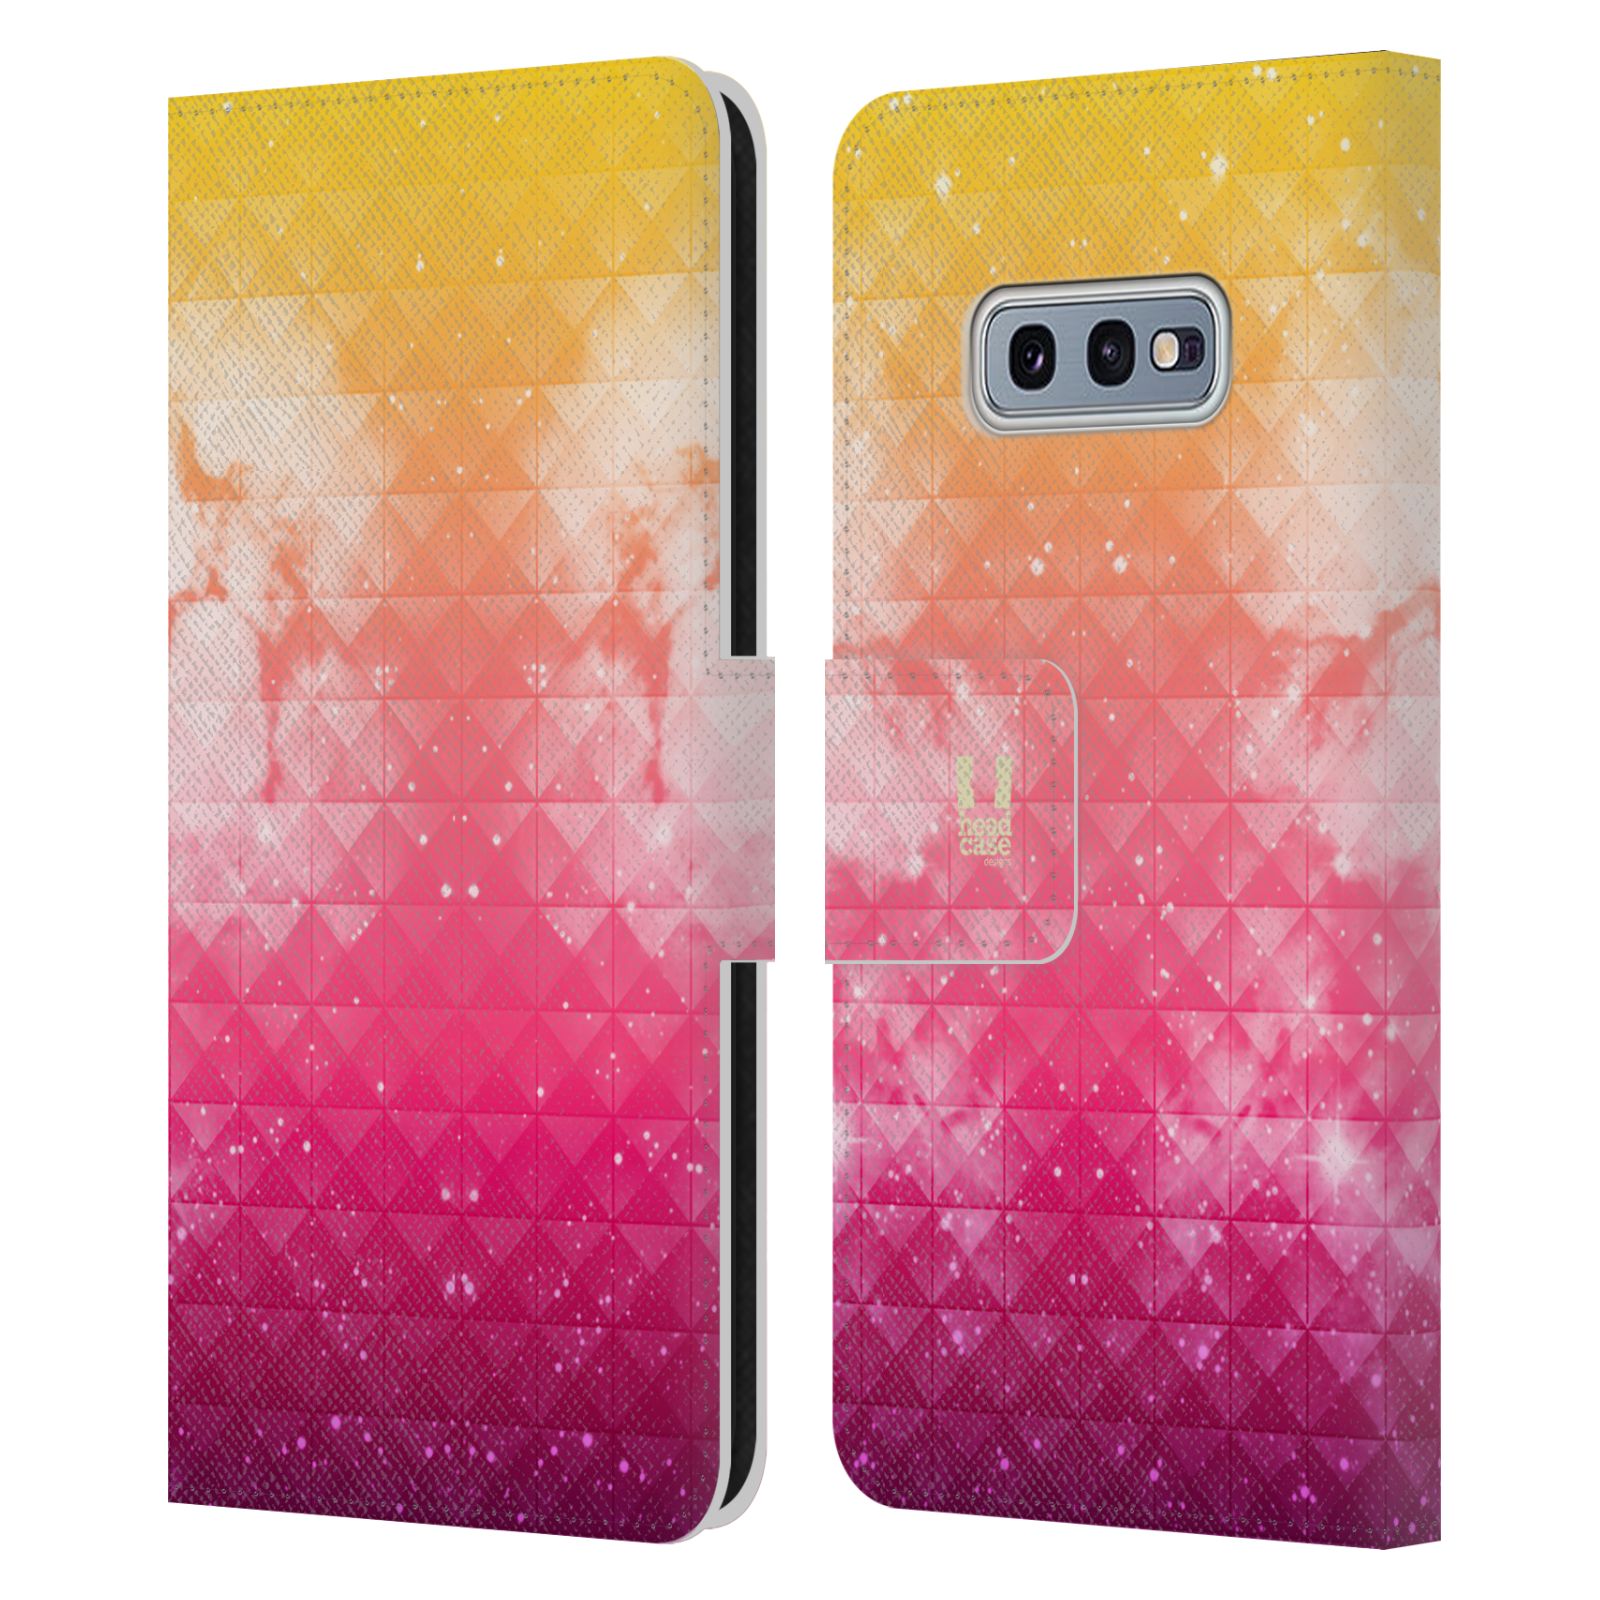 Pouzdro HEAD CASE na mobil Samsung Galaxy S10e barevná vesmírná mlhovina oranžová a růžová